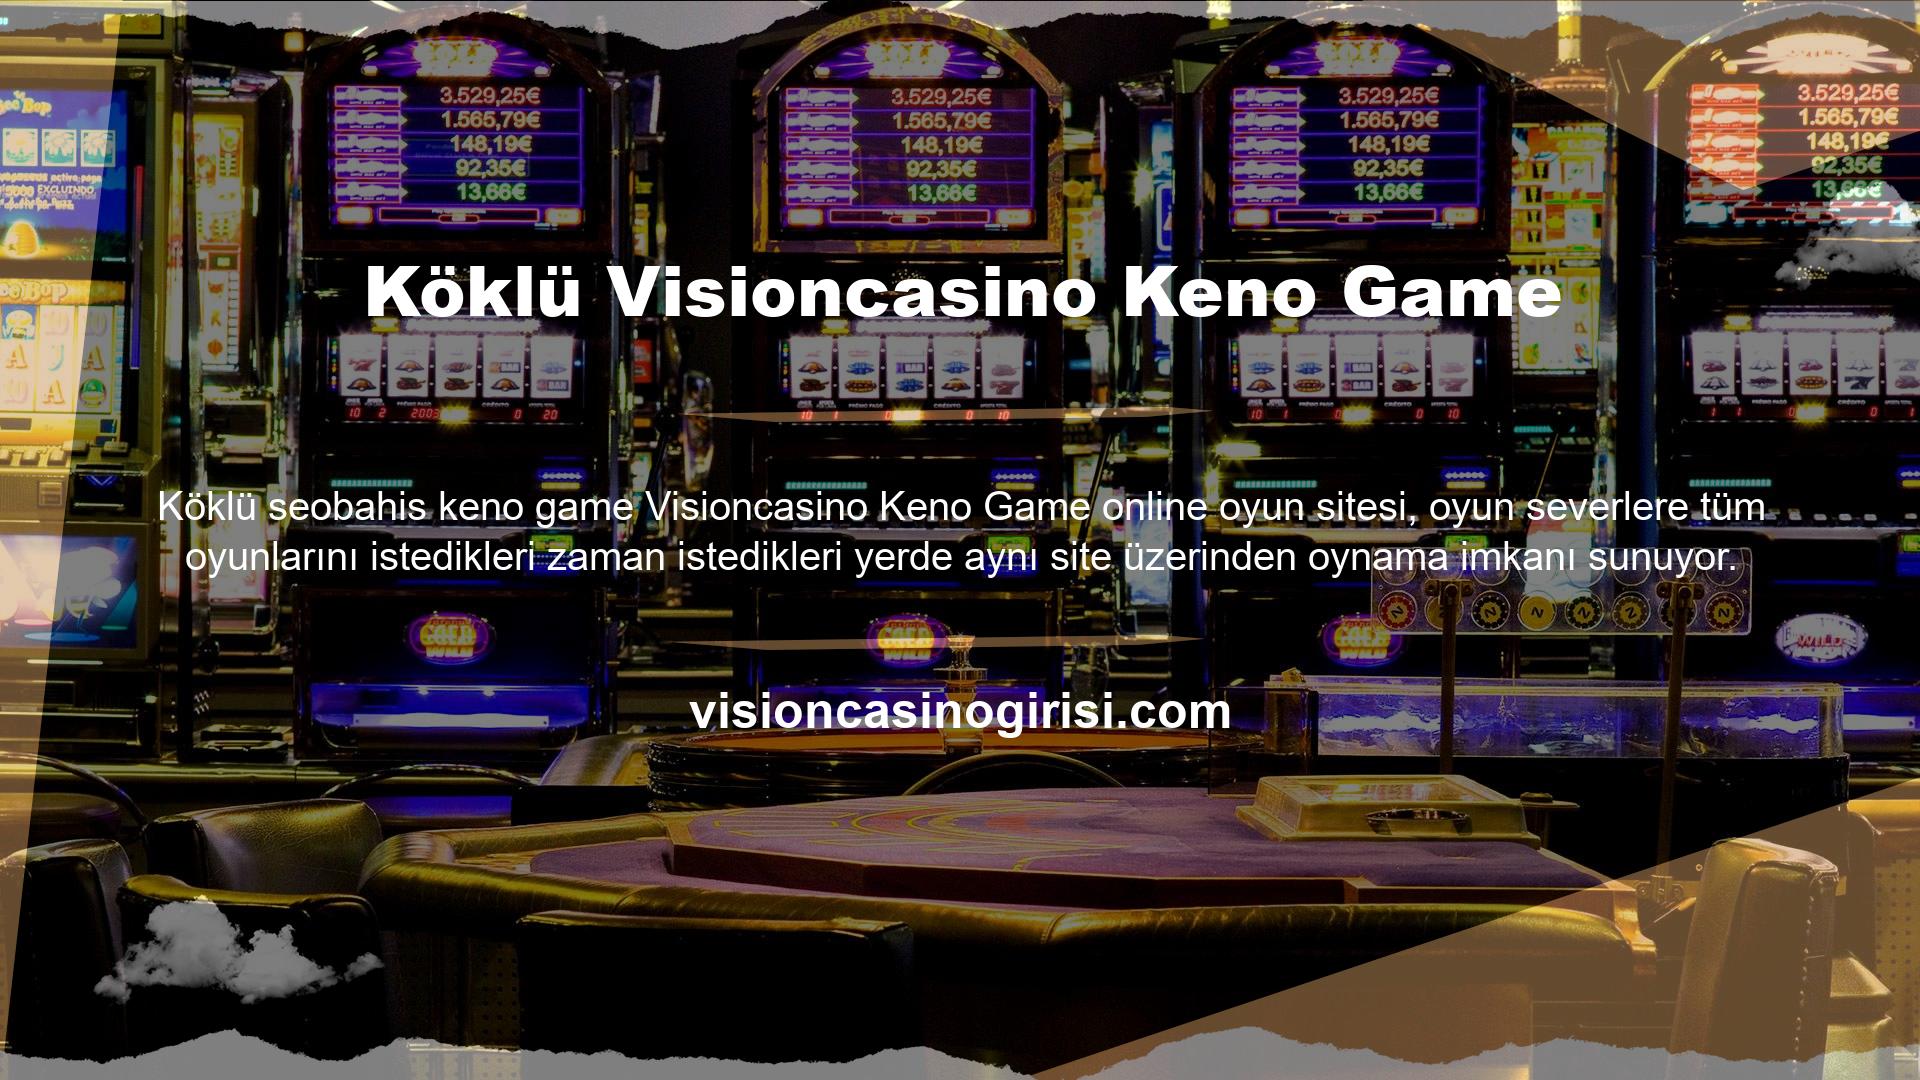 Visioncasino keno oyunu online olarak oynanan oyunlardan biridir